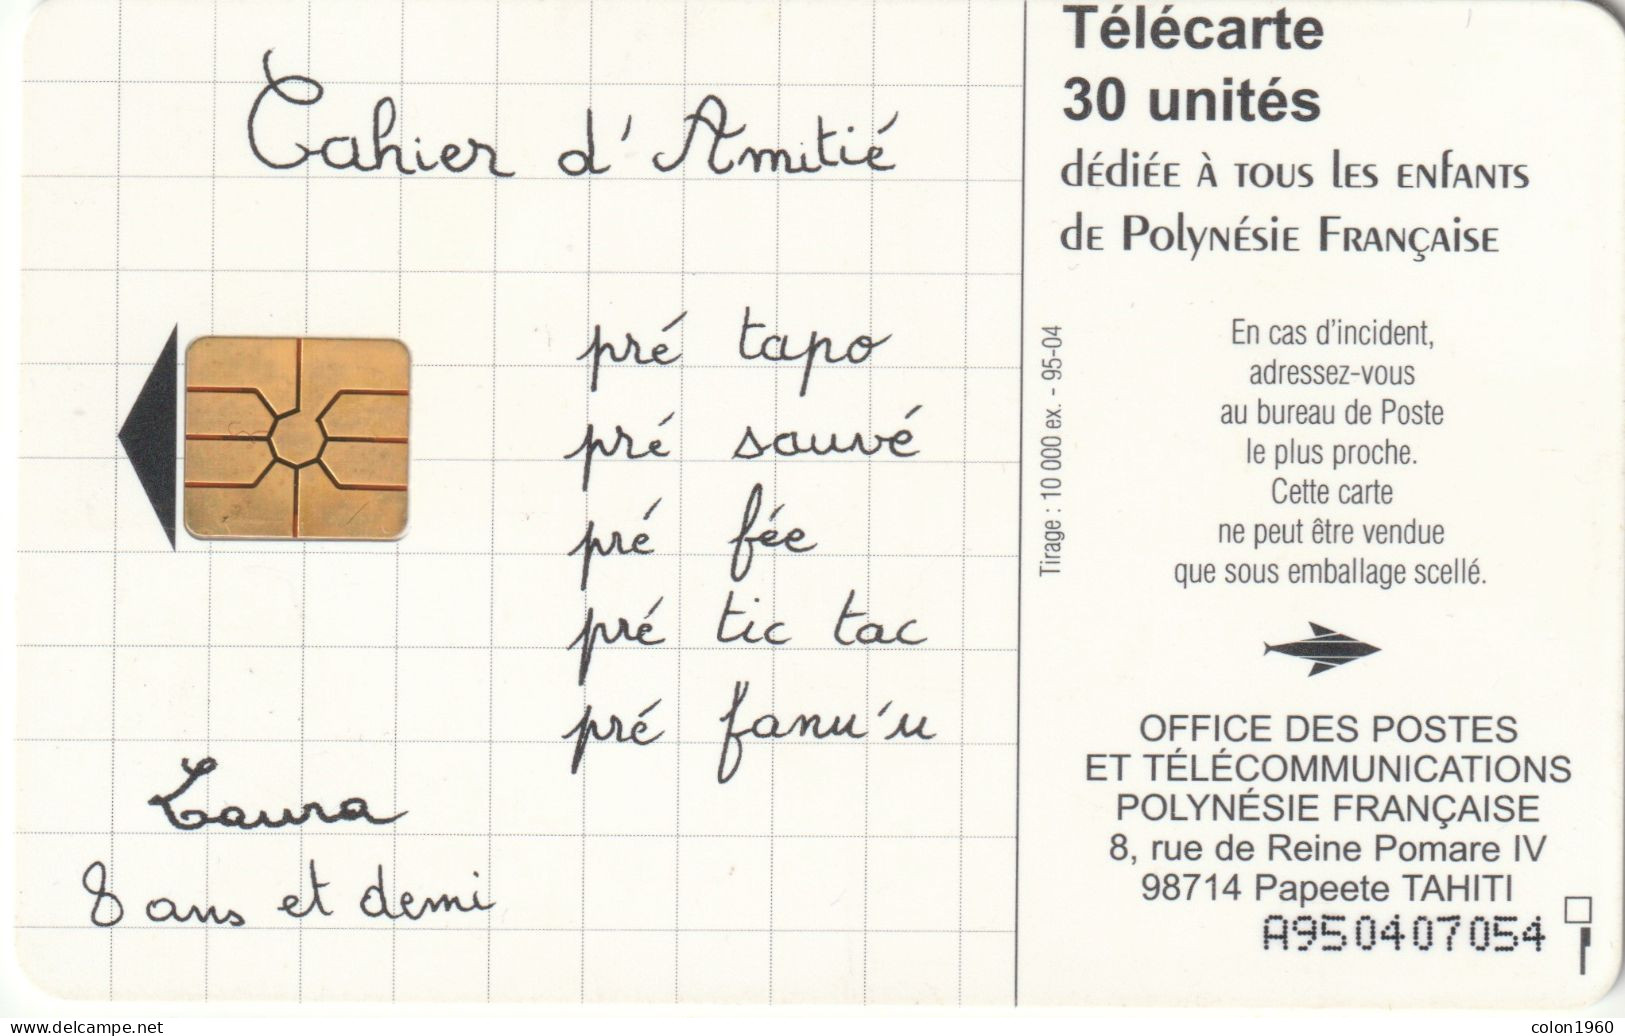 POLINESIA FRANCESA. FP033. Cahier D'Amitié. 1995-04. 10000 Ex. (021) - Polynésie Française